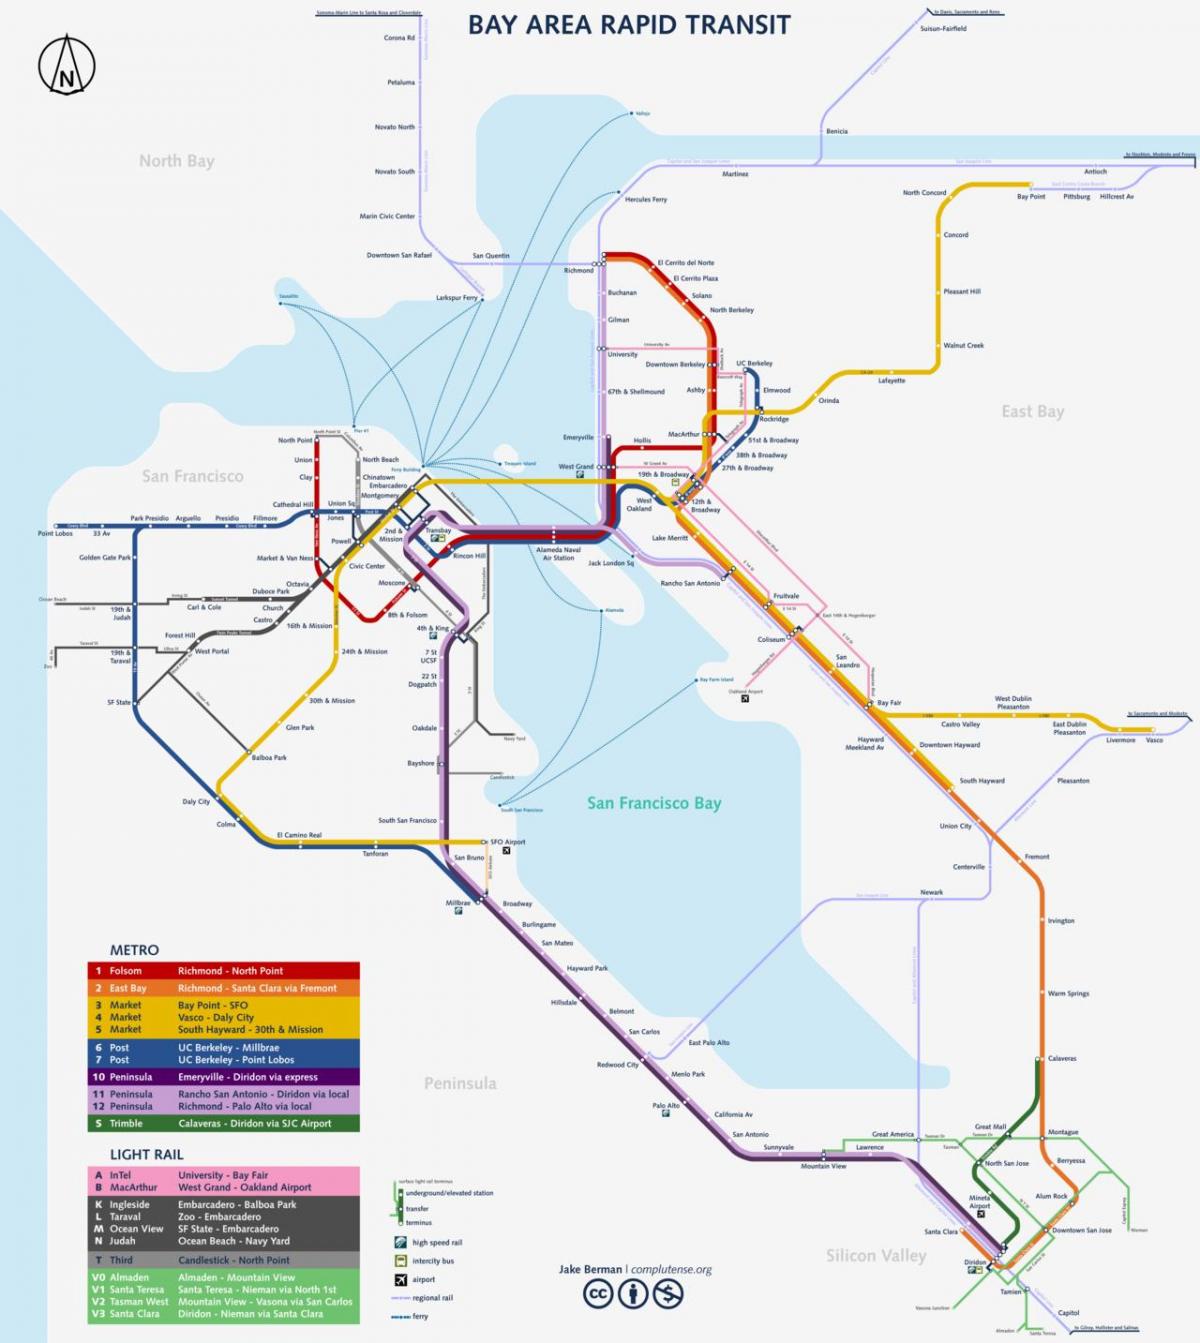 San Fran zemljevid podzemne železnice